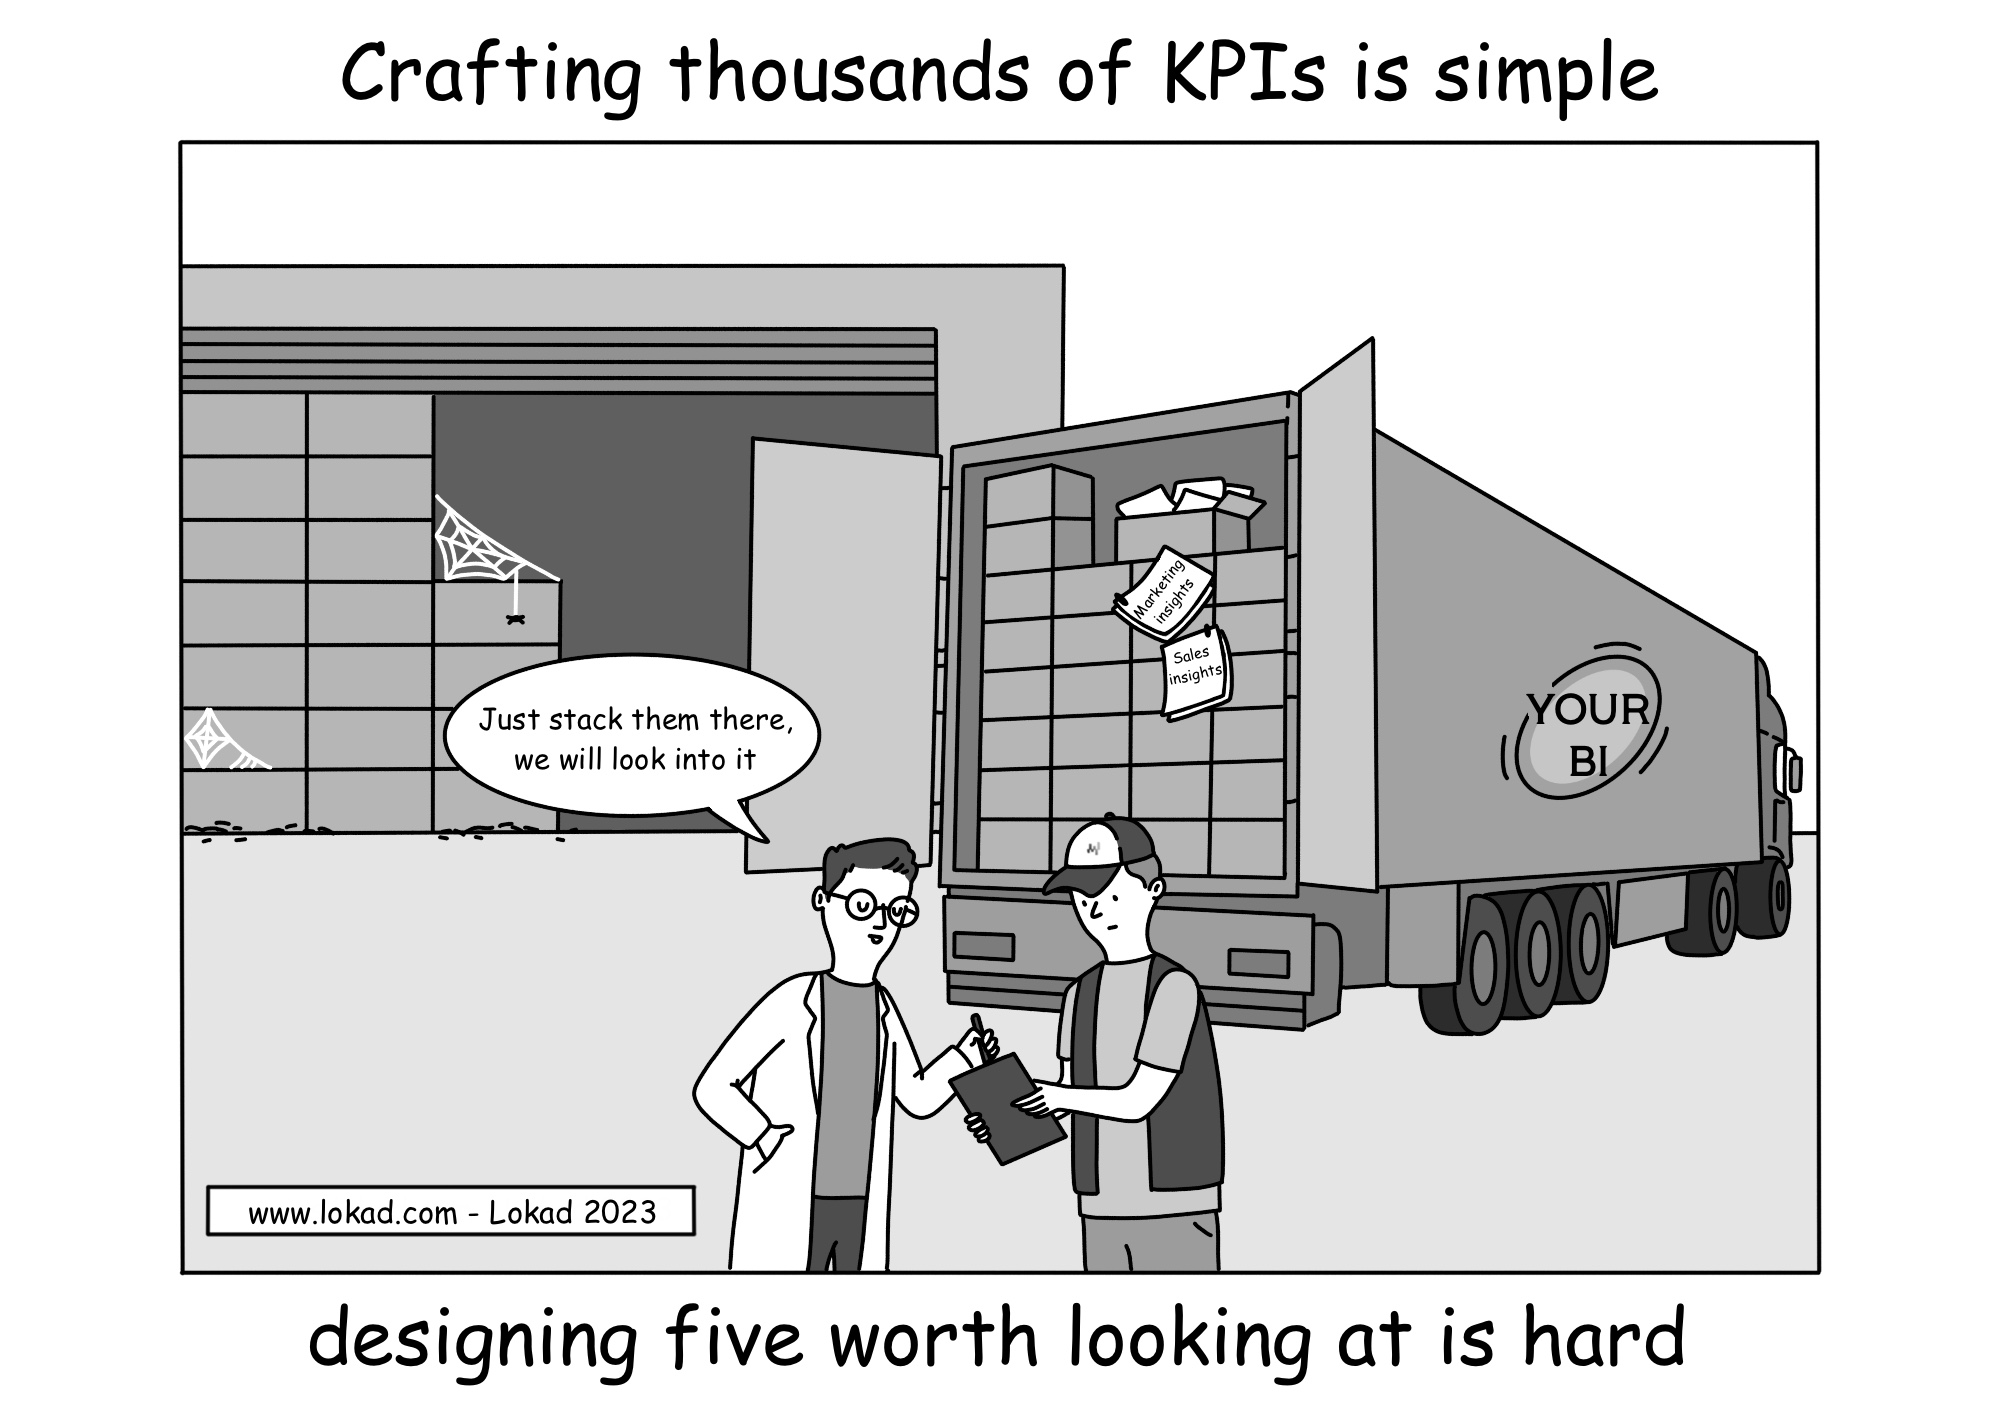 Создание тысяч KPI - просто